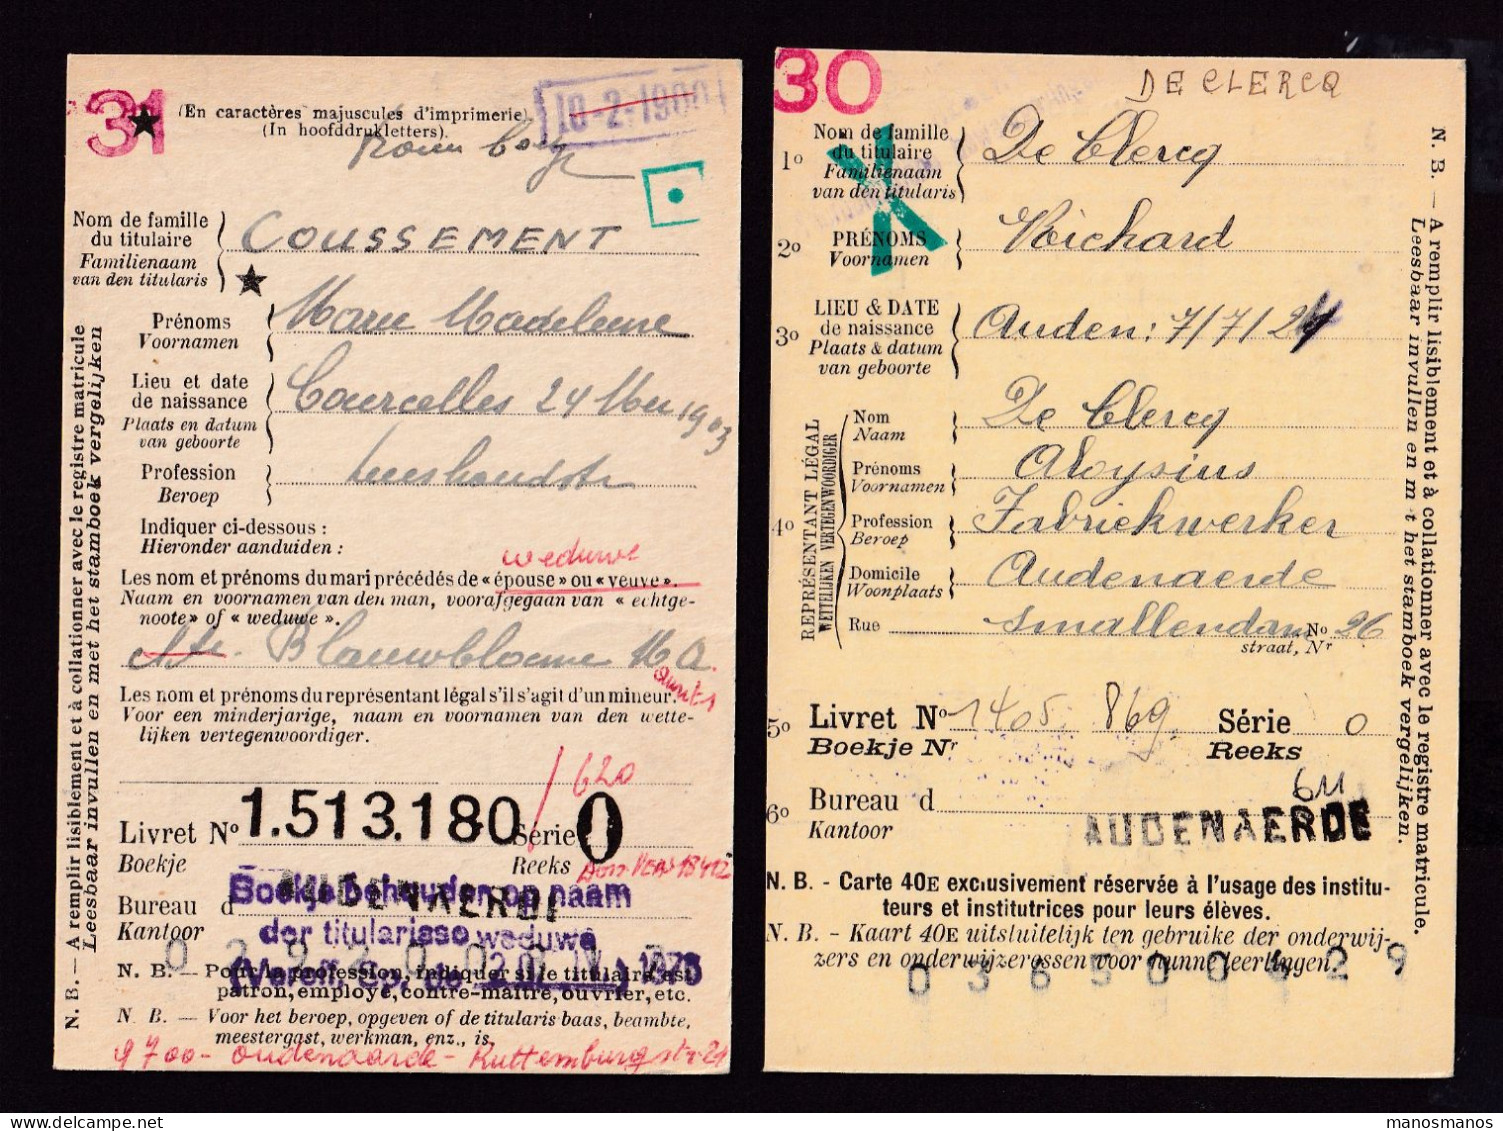 DDFF 562 -- AUDENAERDE B Et C - 2 X Carte De Caisse D'Epargne Postale/Postspaarkaskaart 1930/1931 - Petites Griffes - Zonder Portkosten